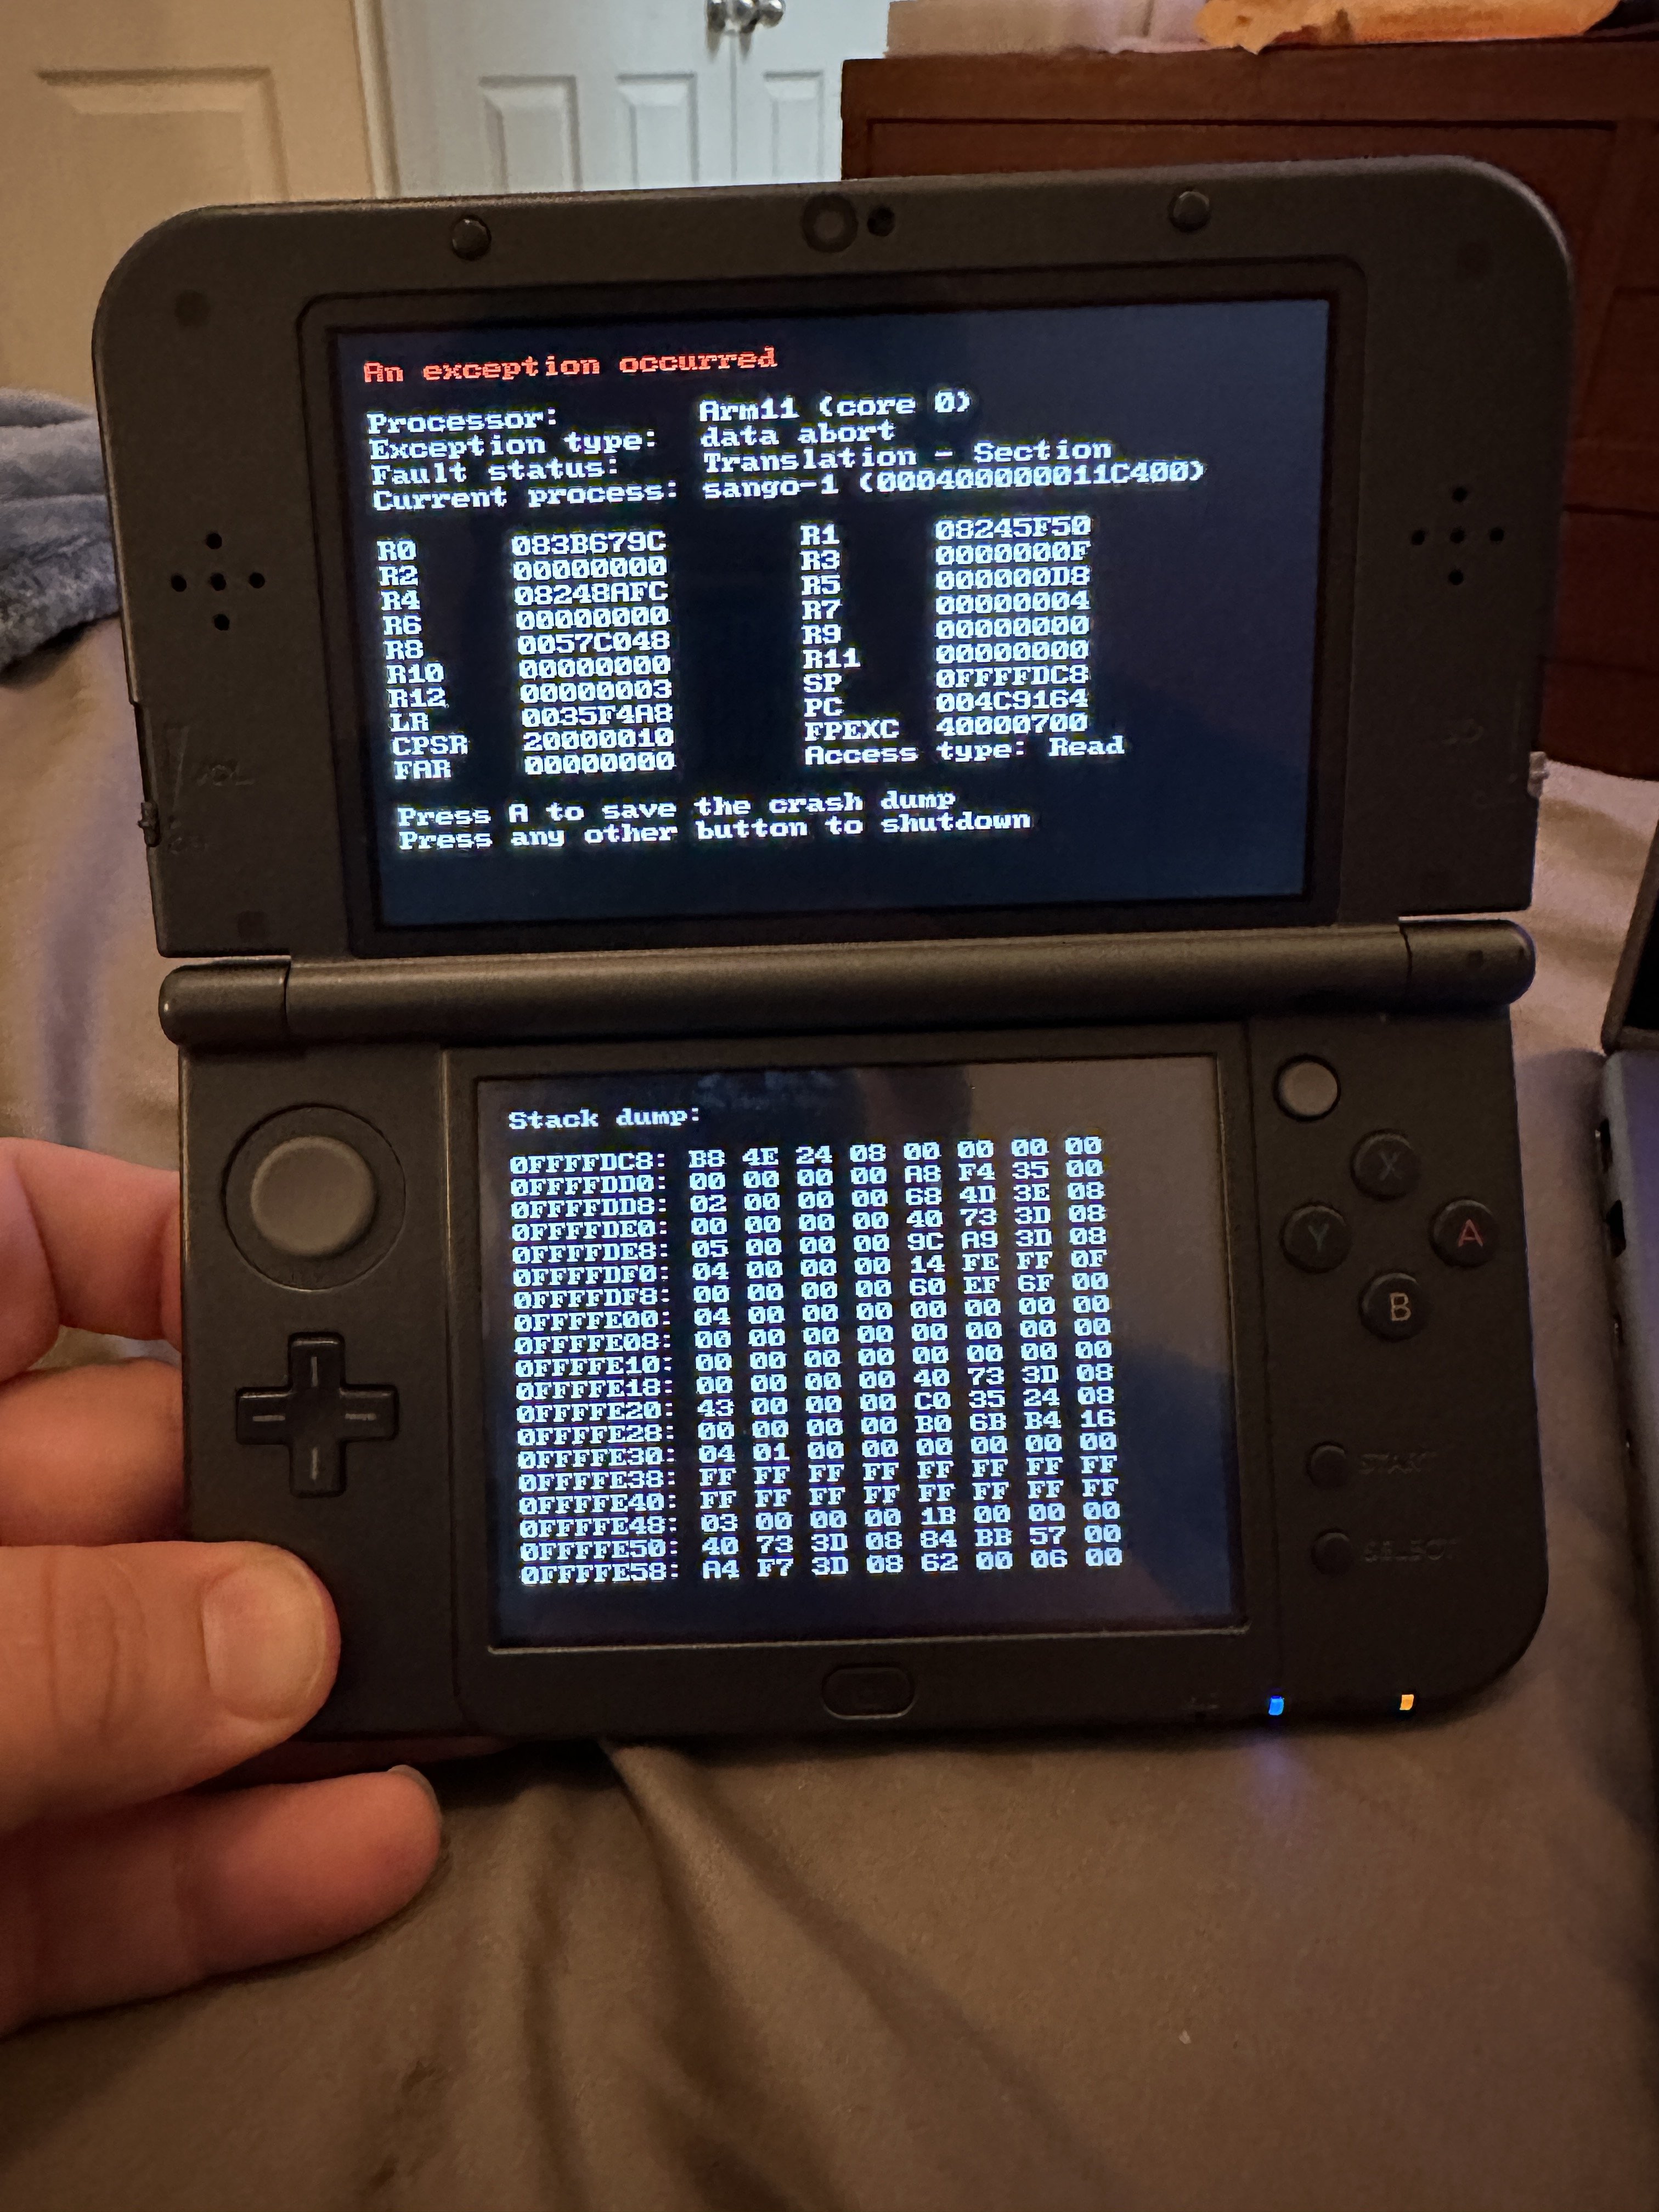 How to Easily Randomize Pokémon Games for Citra 3DS Emulator 